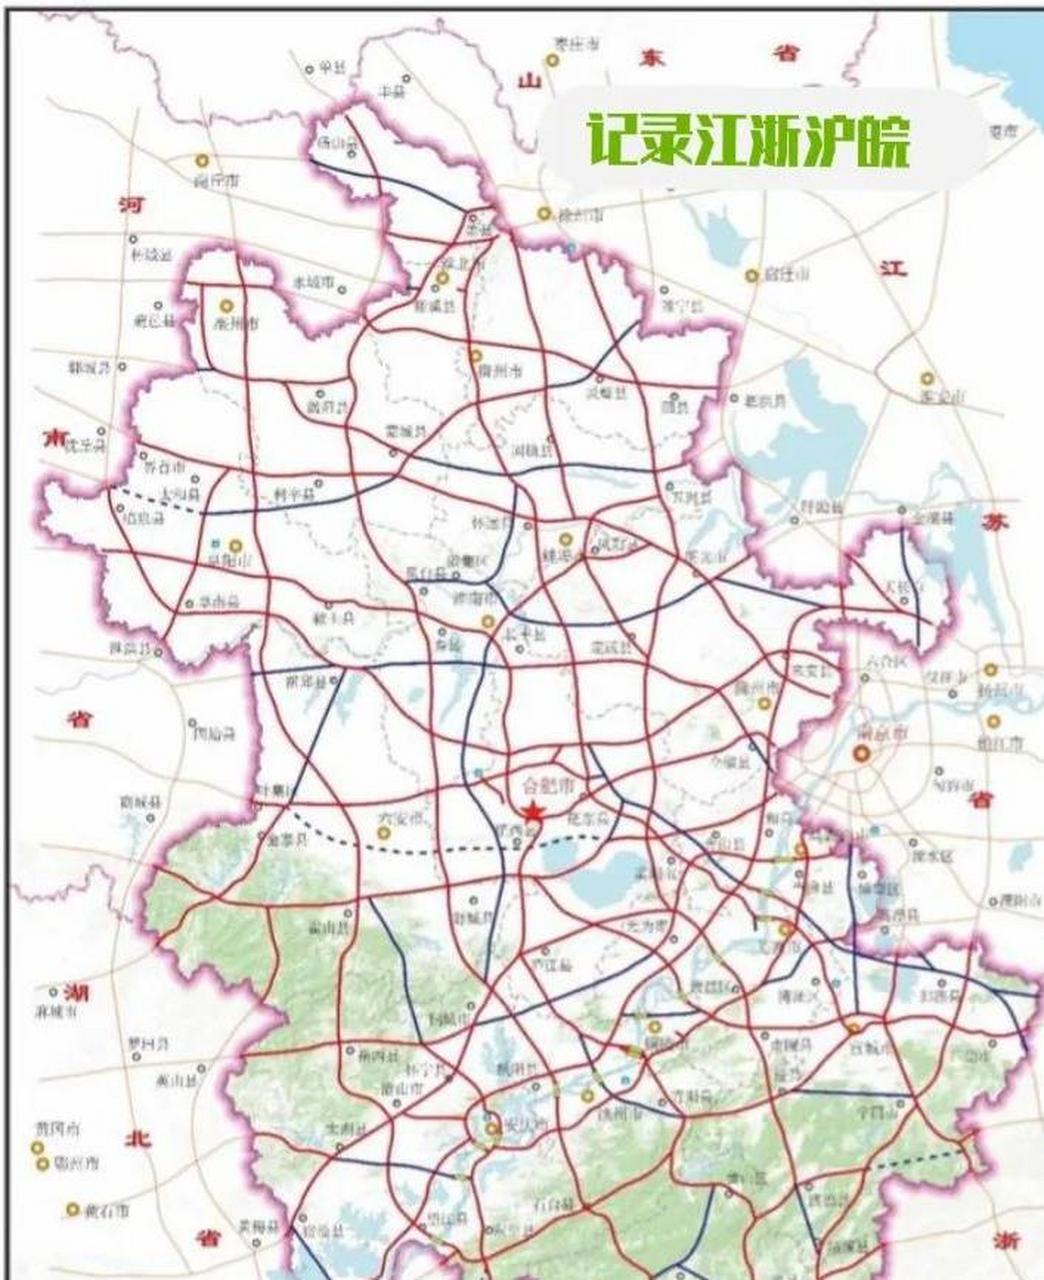 安徽高速规划图,没想到那么密集!